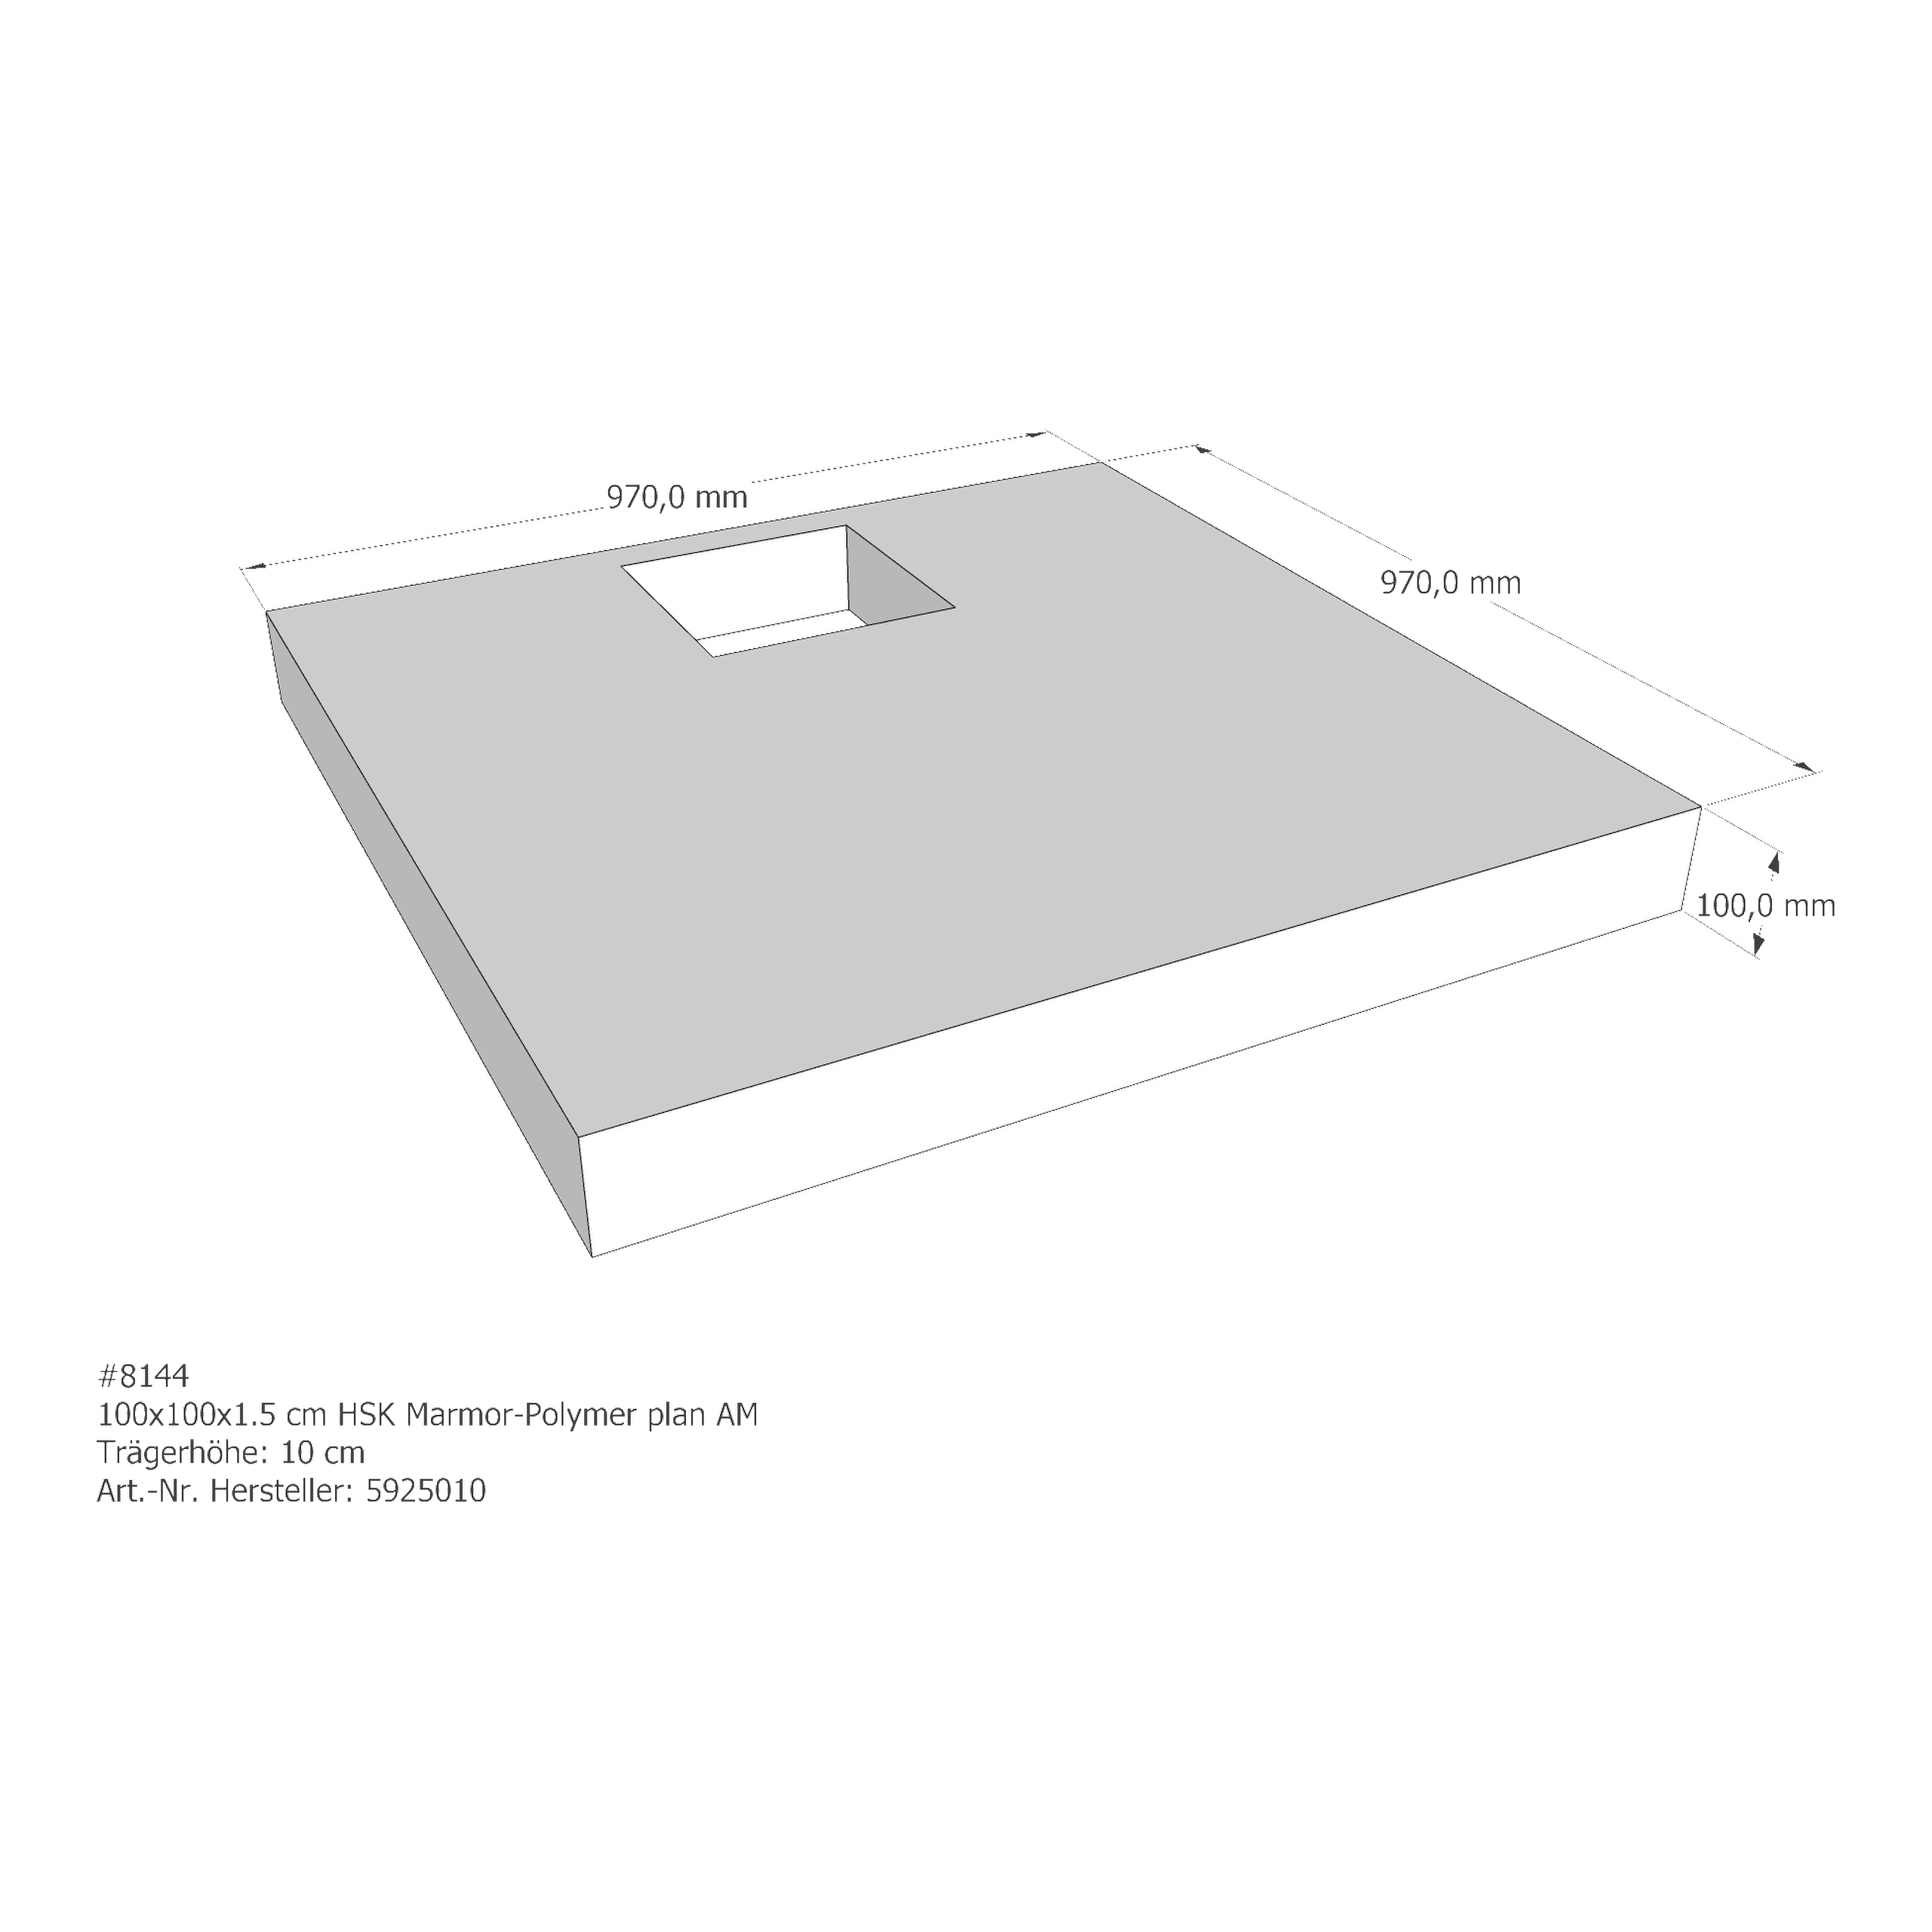 Duschwannenträger HSK Marmor-Polymer plan 100x100x1,5 cm AM